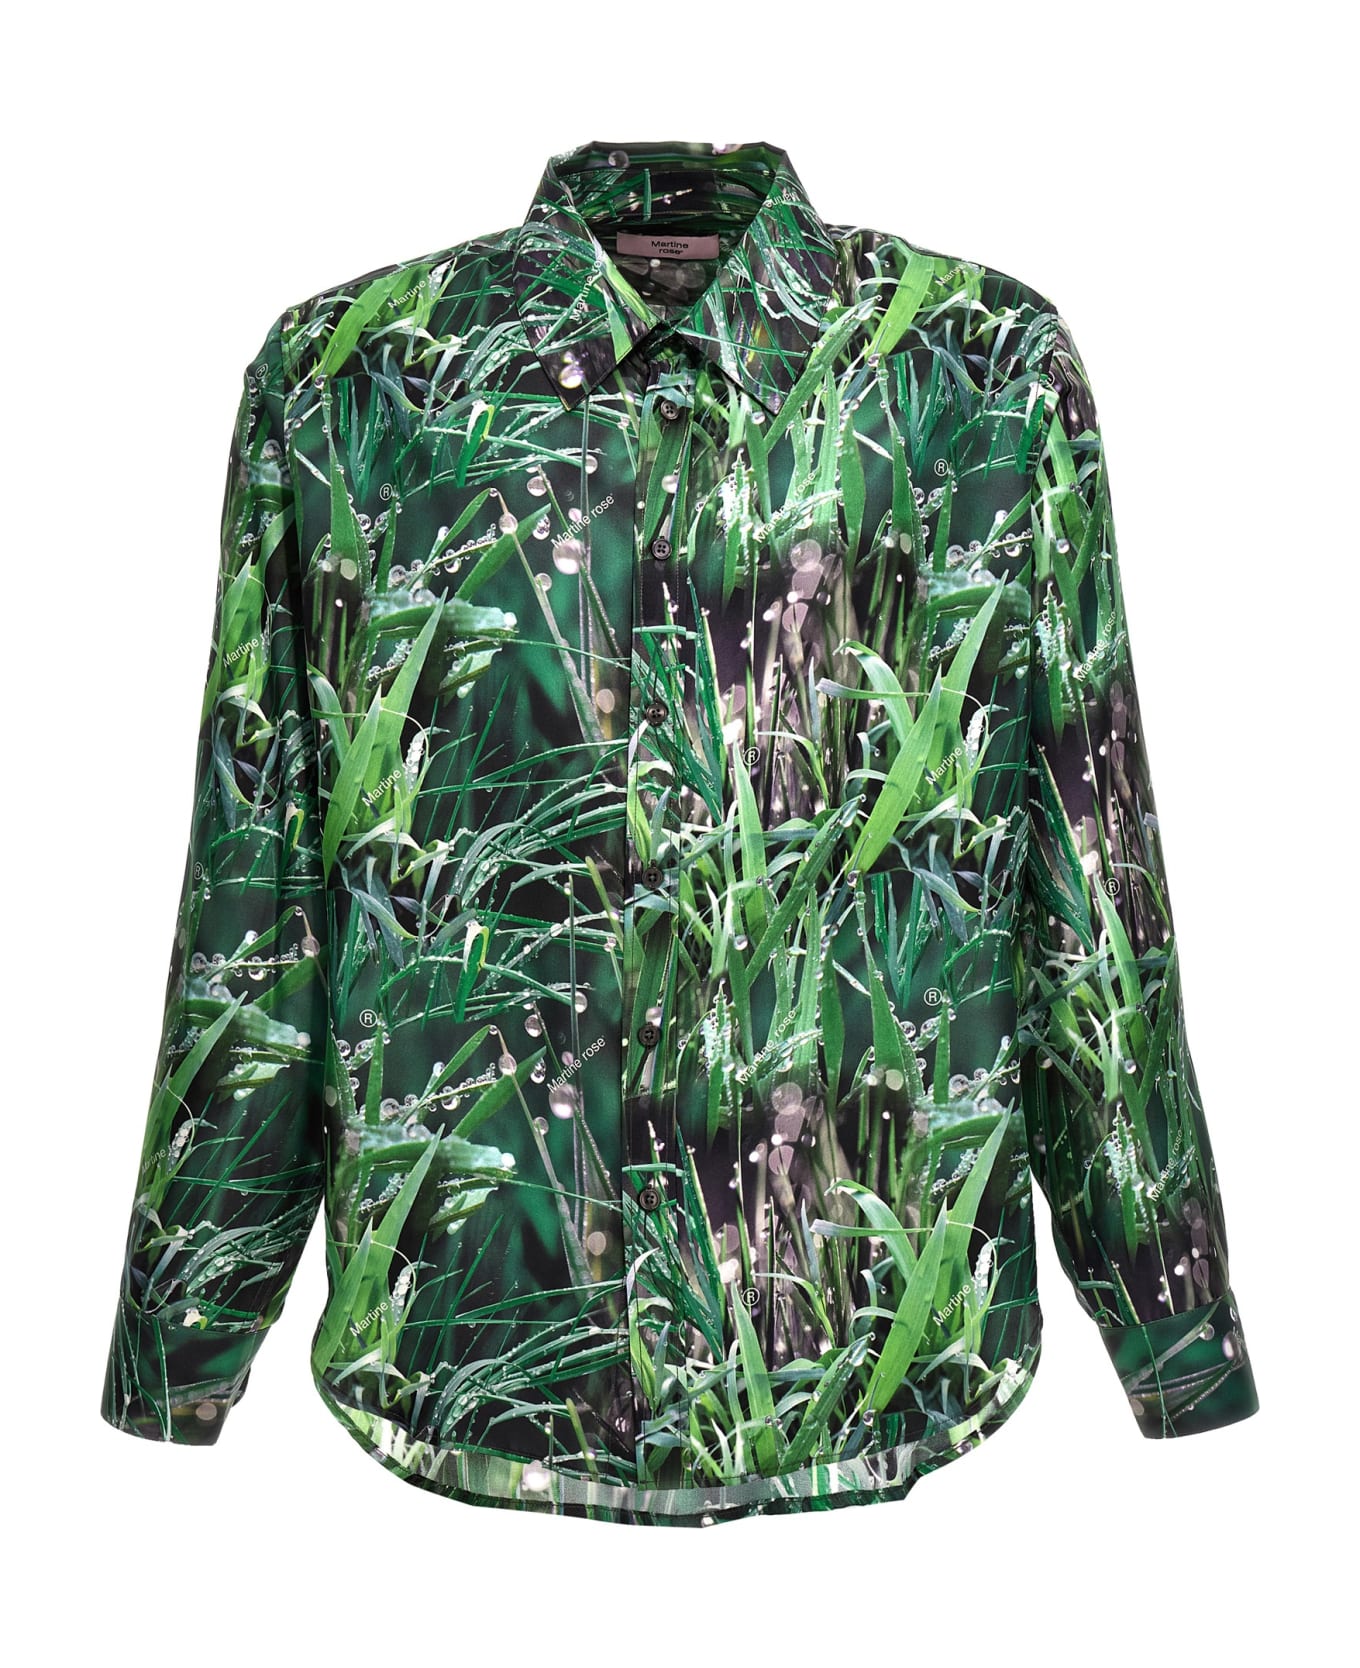 Martine Rose 'grass' Shirt - Green シャツ